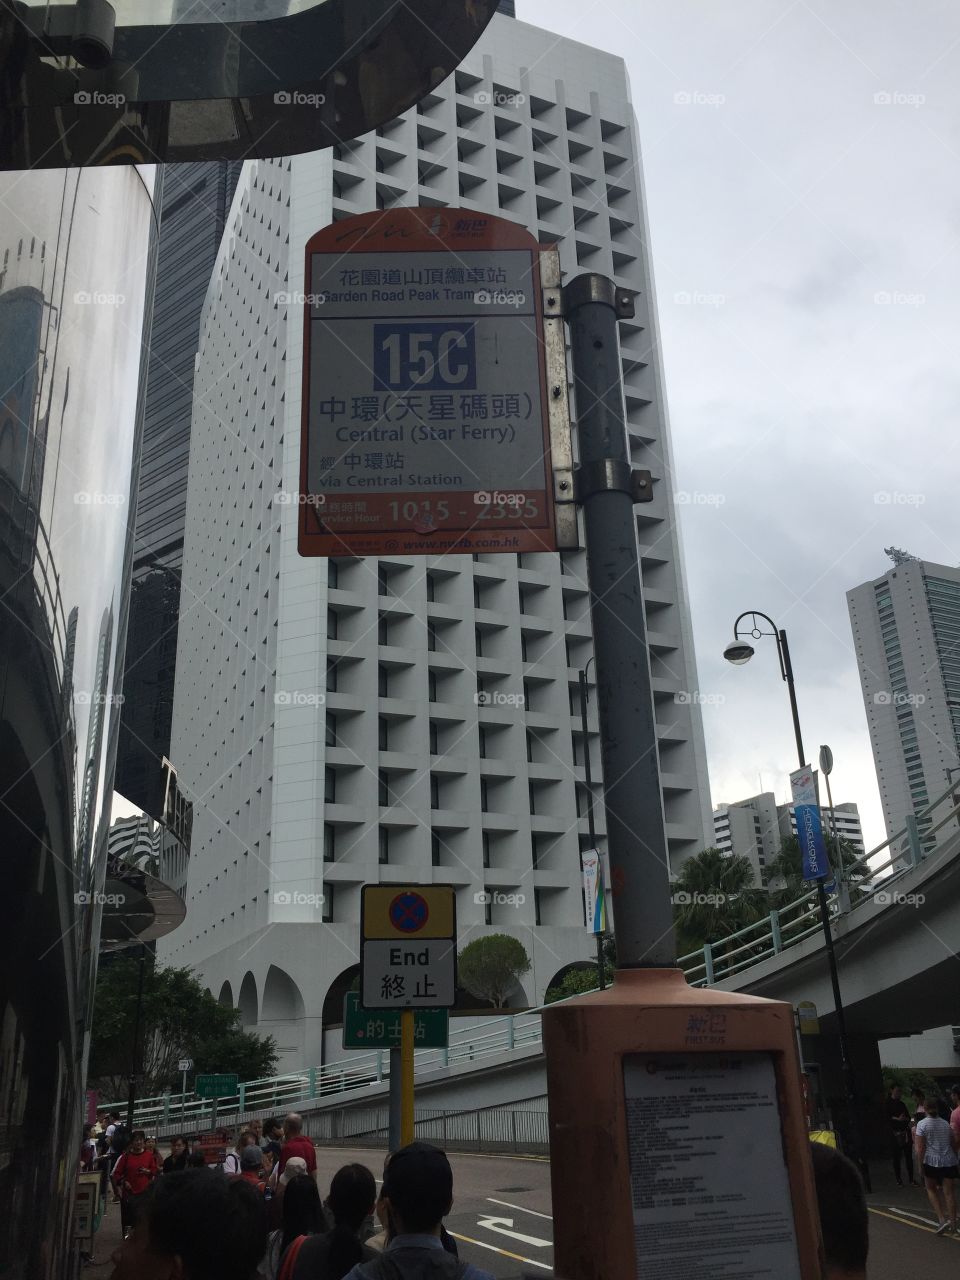 Hong Kong Signs and Street Views